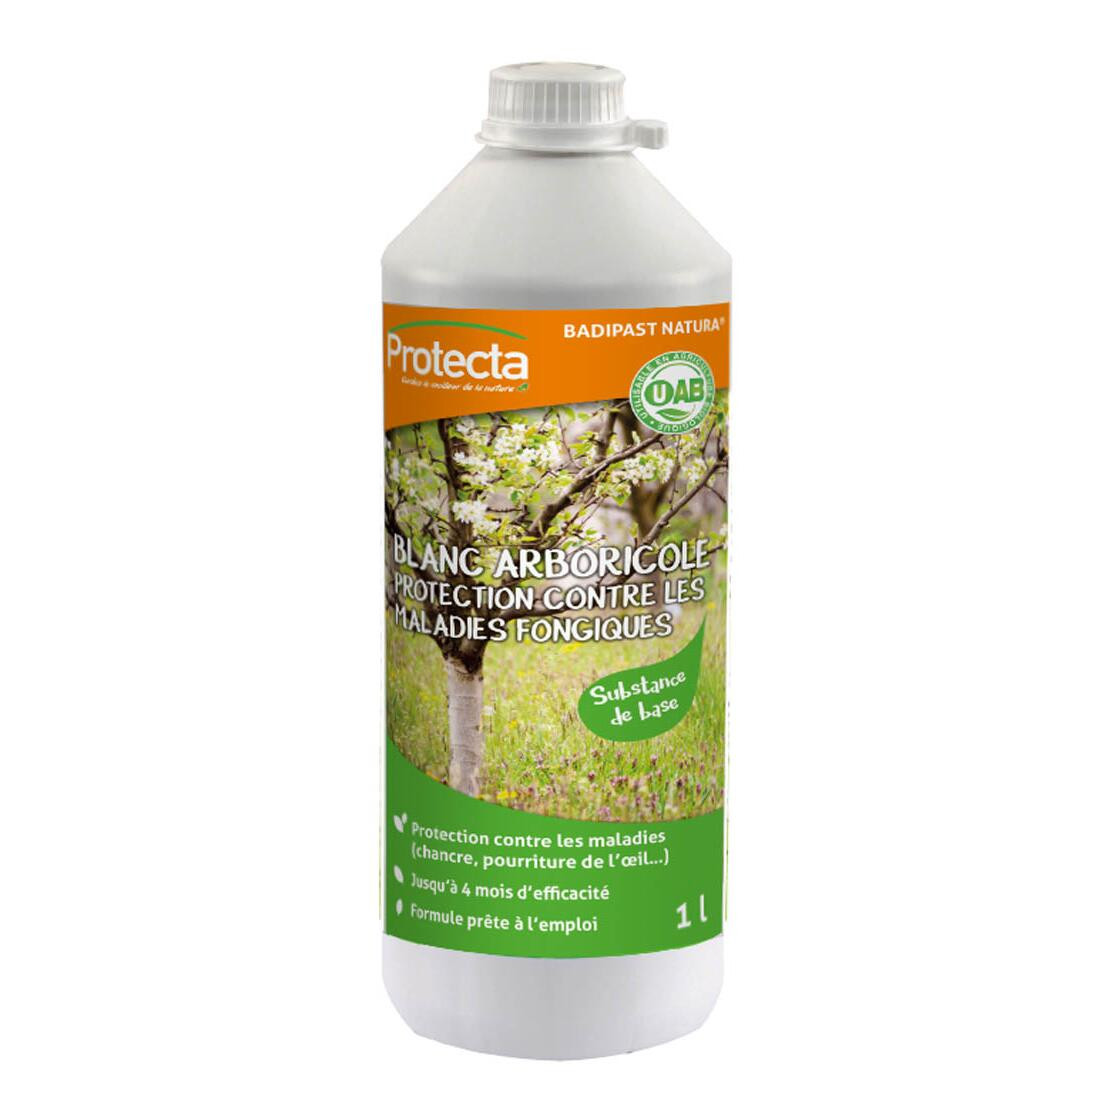 Blanc arboricole naturel 1 litre prêt à l'emploi - Florol